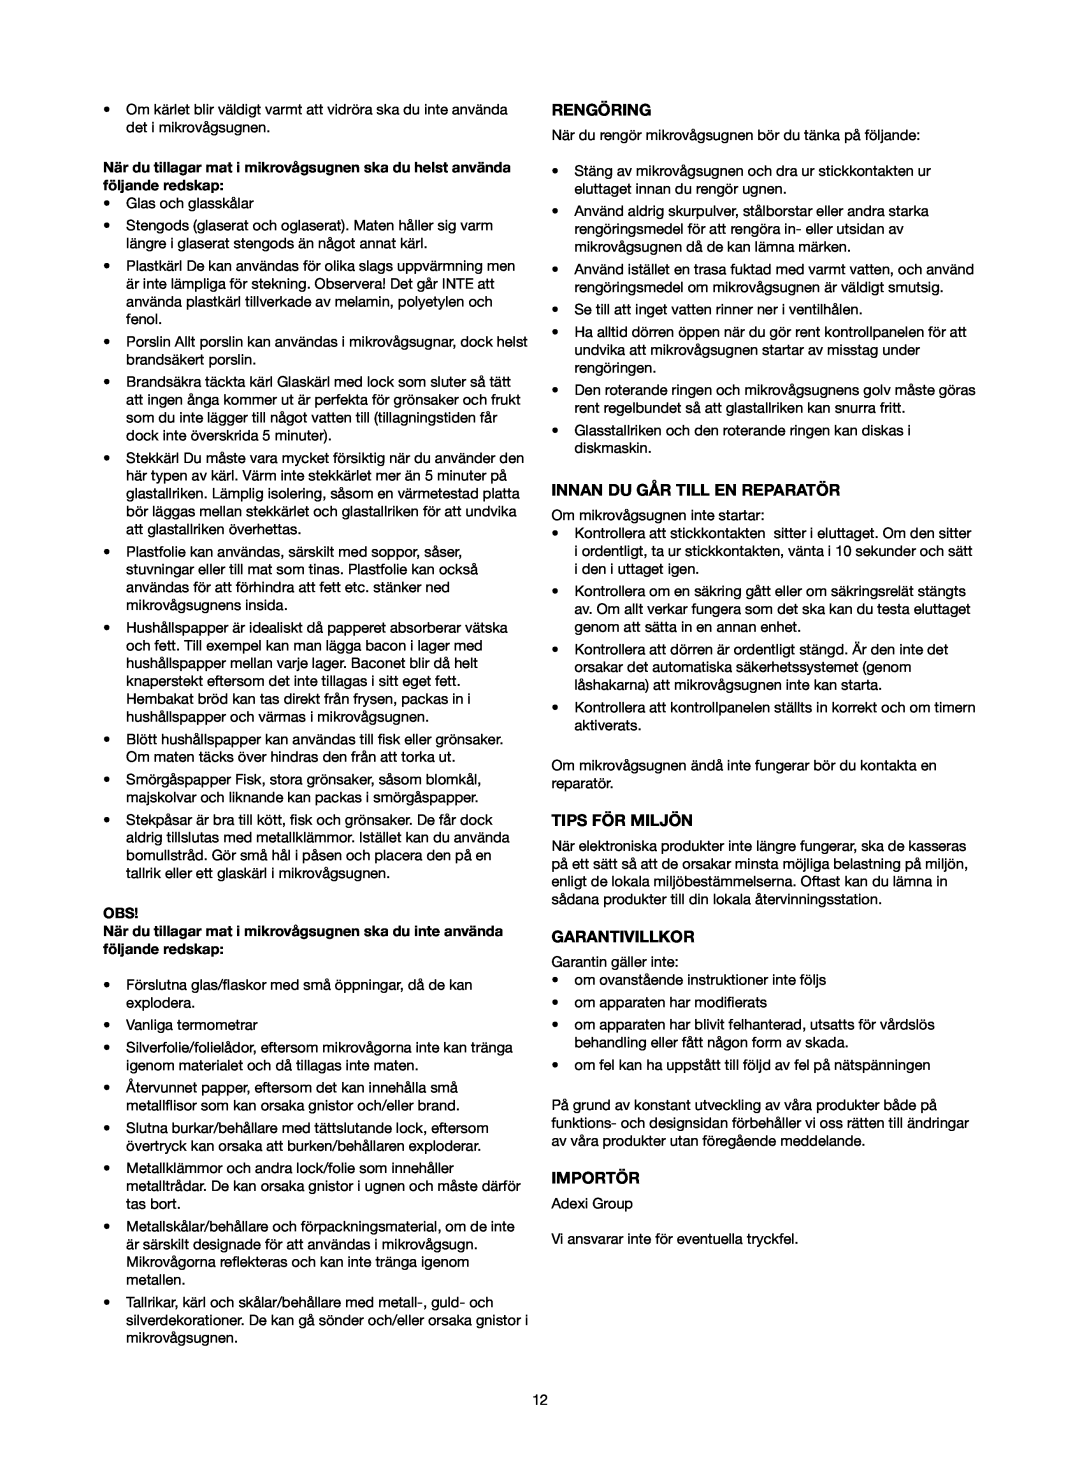 Melissa 753-089 manual Rengöring, Innan Du Går Till En Reparatör, Tips För Miljön, Garantivillkor, Importör 